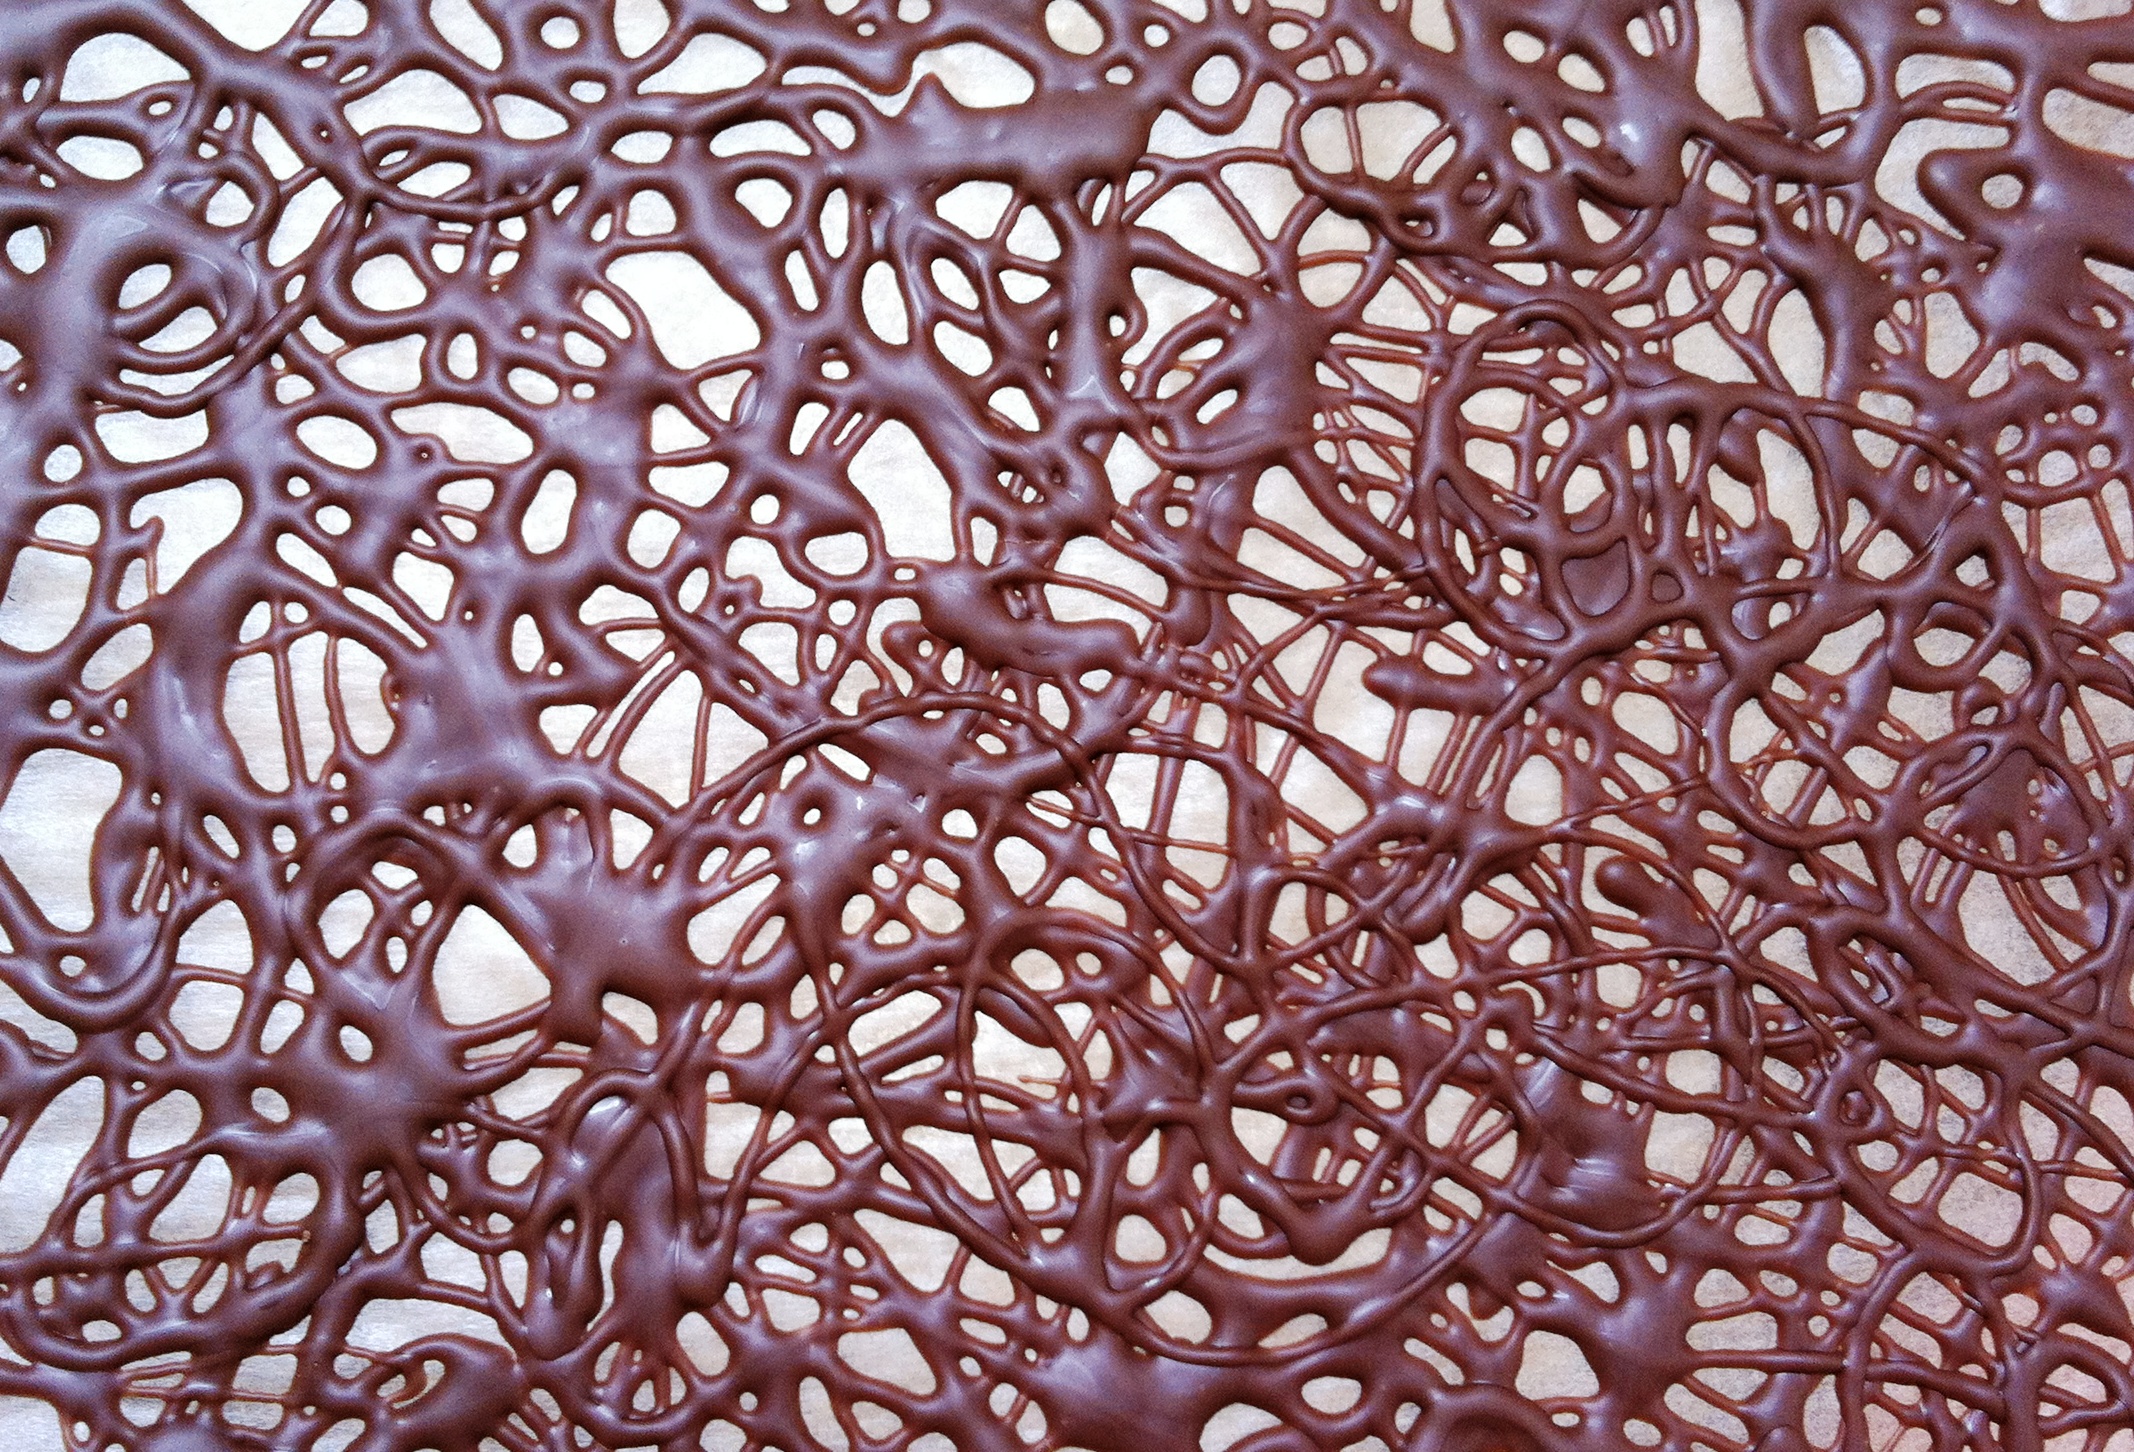 swirled_chocolate